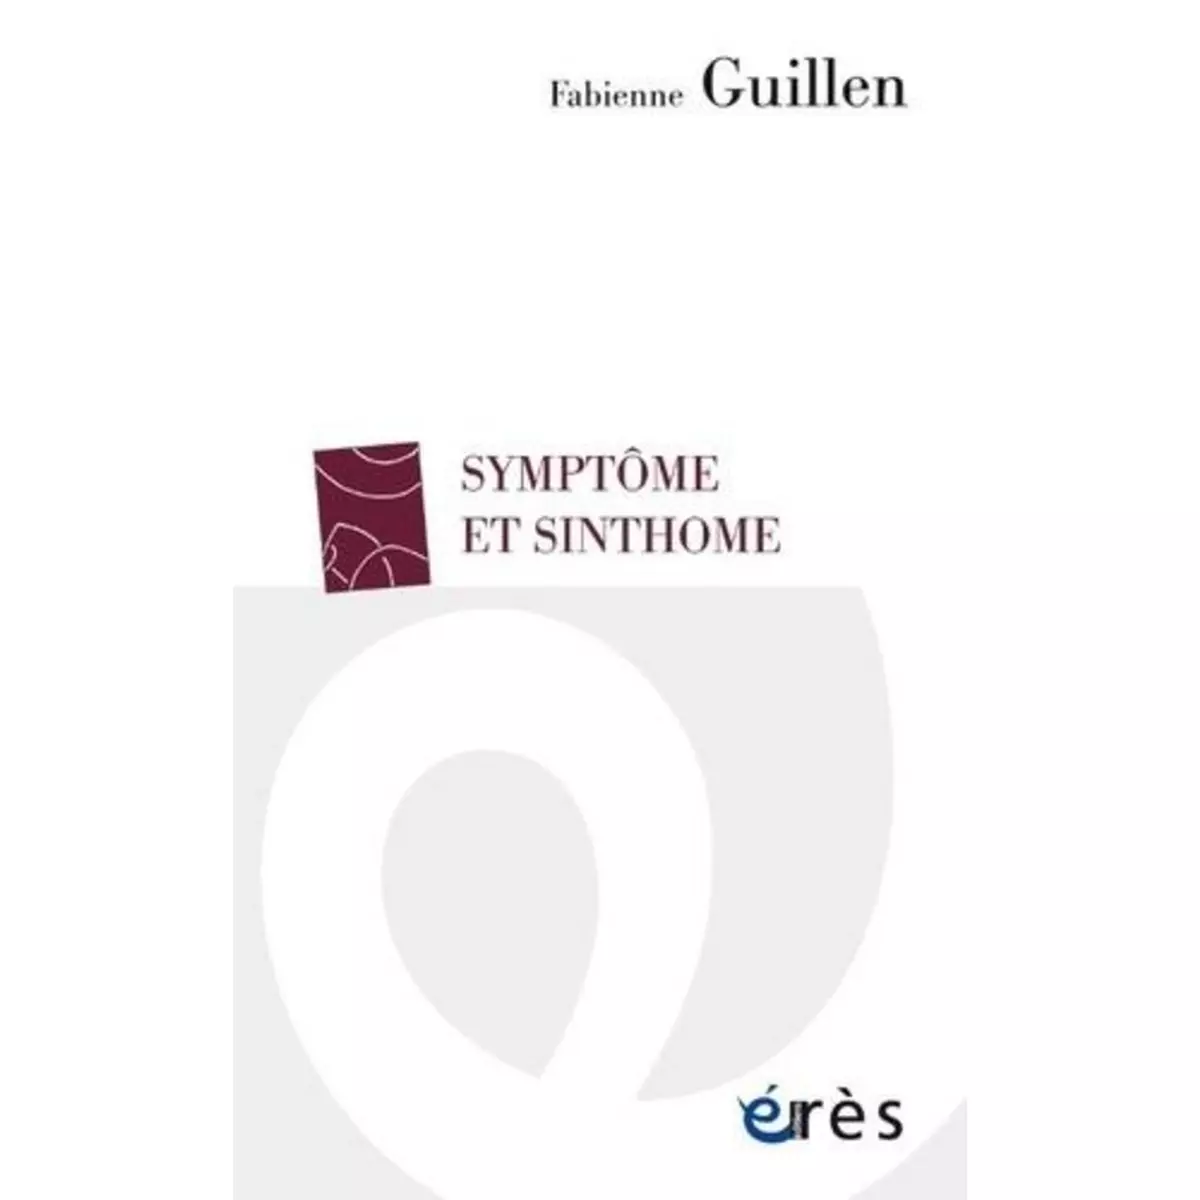  SYMPTOME ET SINTHOME, Guillén Fabienne